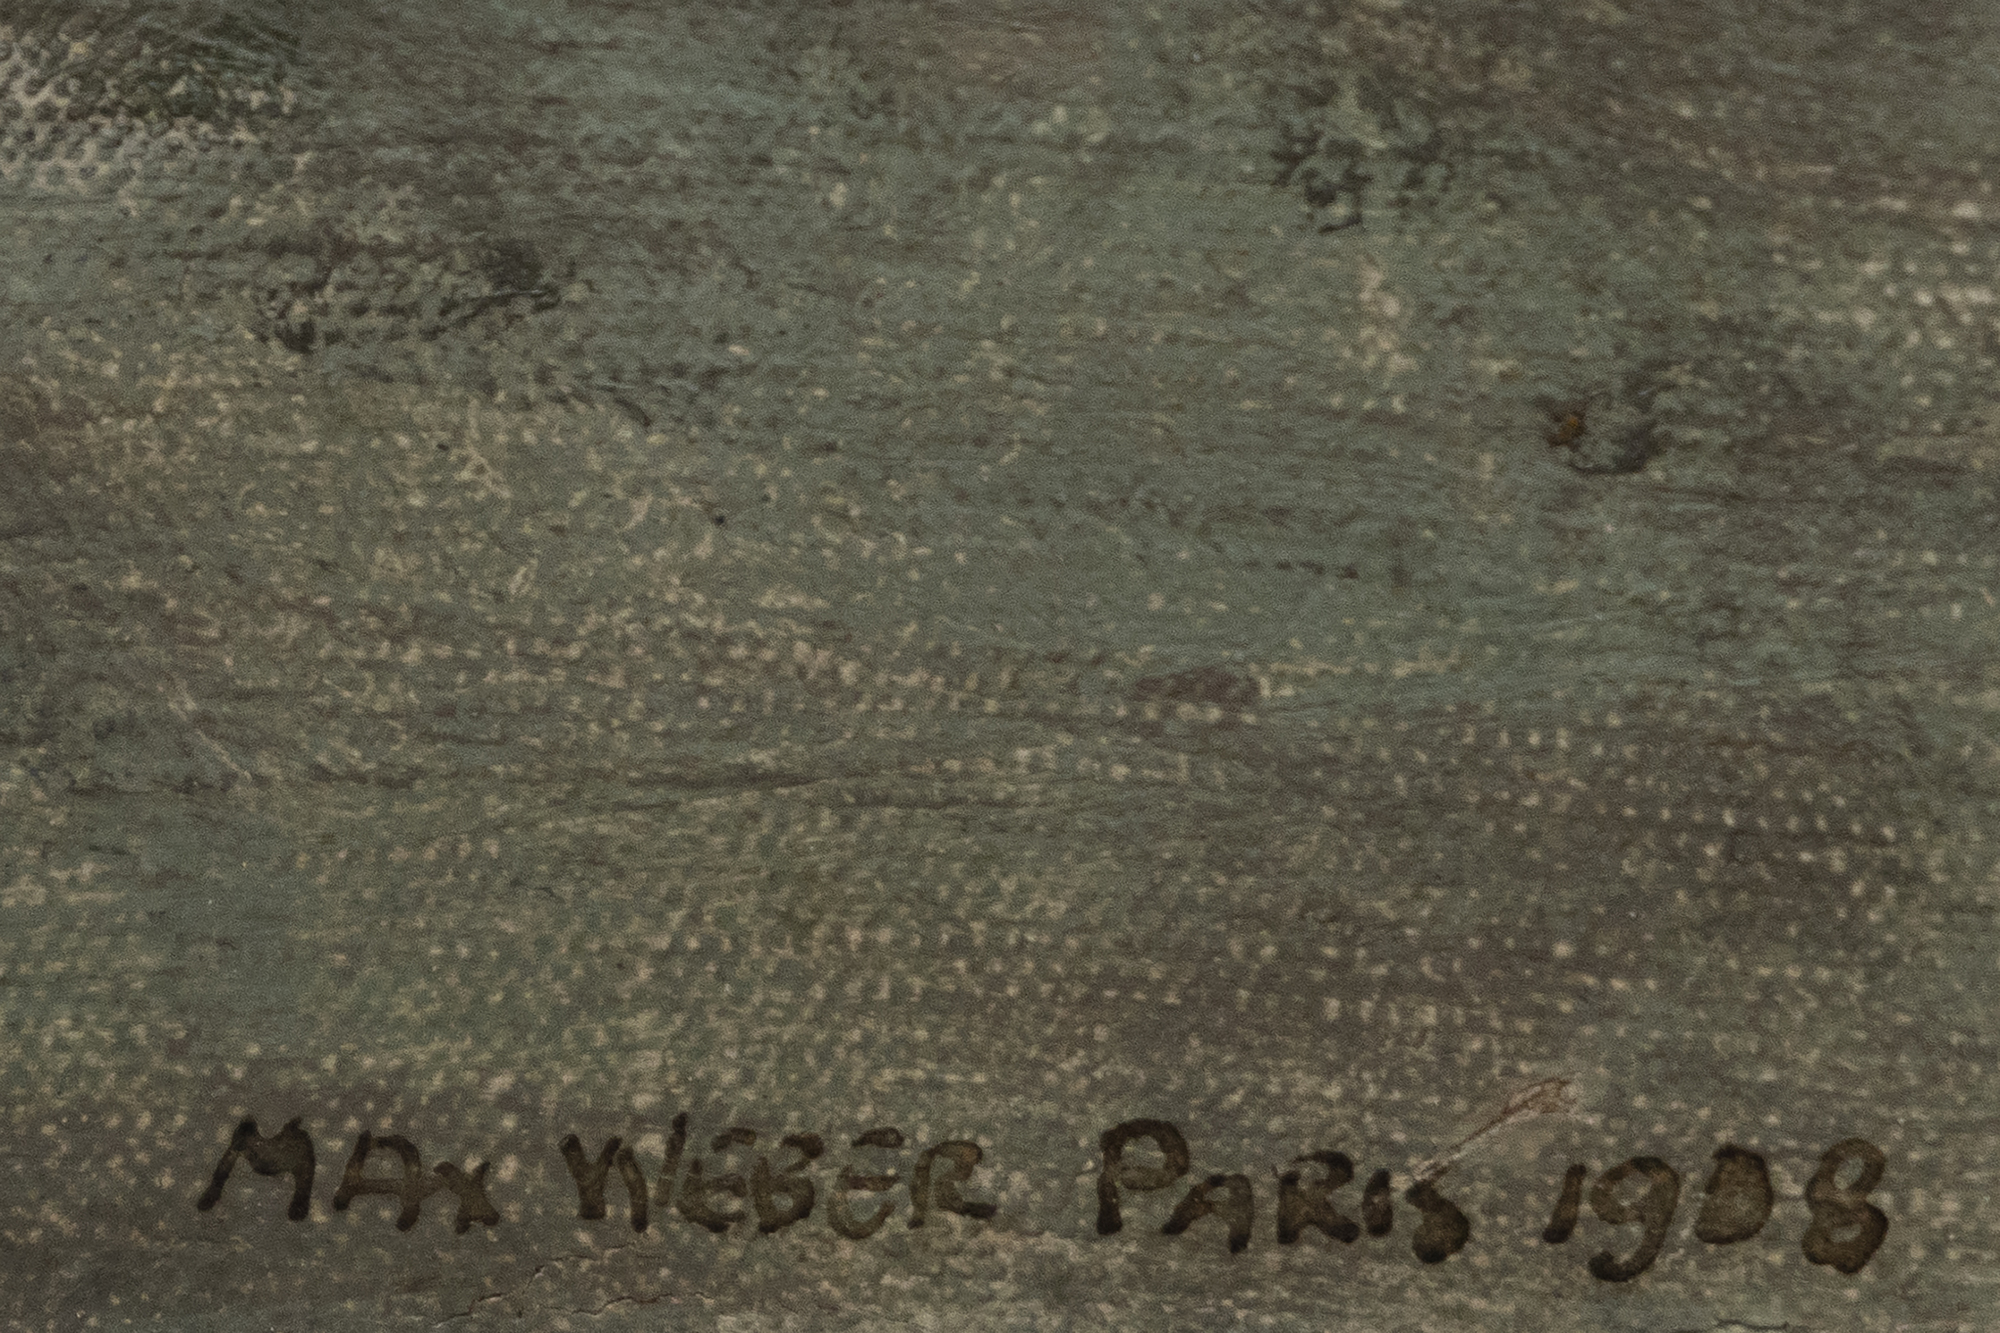 马克斯·韦伯（Max Weber）于1905年移居巴黎，当时这座城市是艺术创新的中心。他的早期作品展示了野兽派大胆的调色板和立体主义对现实的碎片化表现的当代影响。然而，韦伯并不只是模仿这些风格;他整合并重新诠释了它们，创造了自己的东西。韦伯的重要性不仅在于他的抽象作品，还在于他作为现代主义思想的渠道。韦伯在跨大西洋对话中发挥了至关重要的作用，帮助塑造了二十世纪美国艺术的进程。他对女性形象的描绘展示了抽象和具象的综合，捕捉了他主题的本质，同时打破了传统的具象作品。